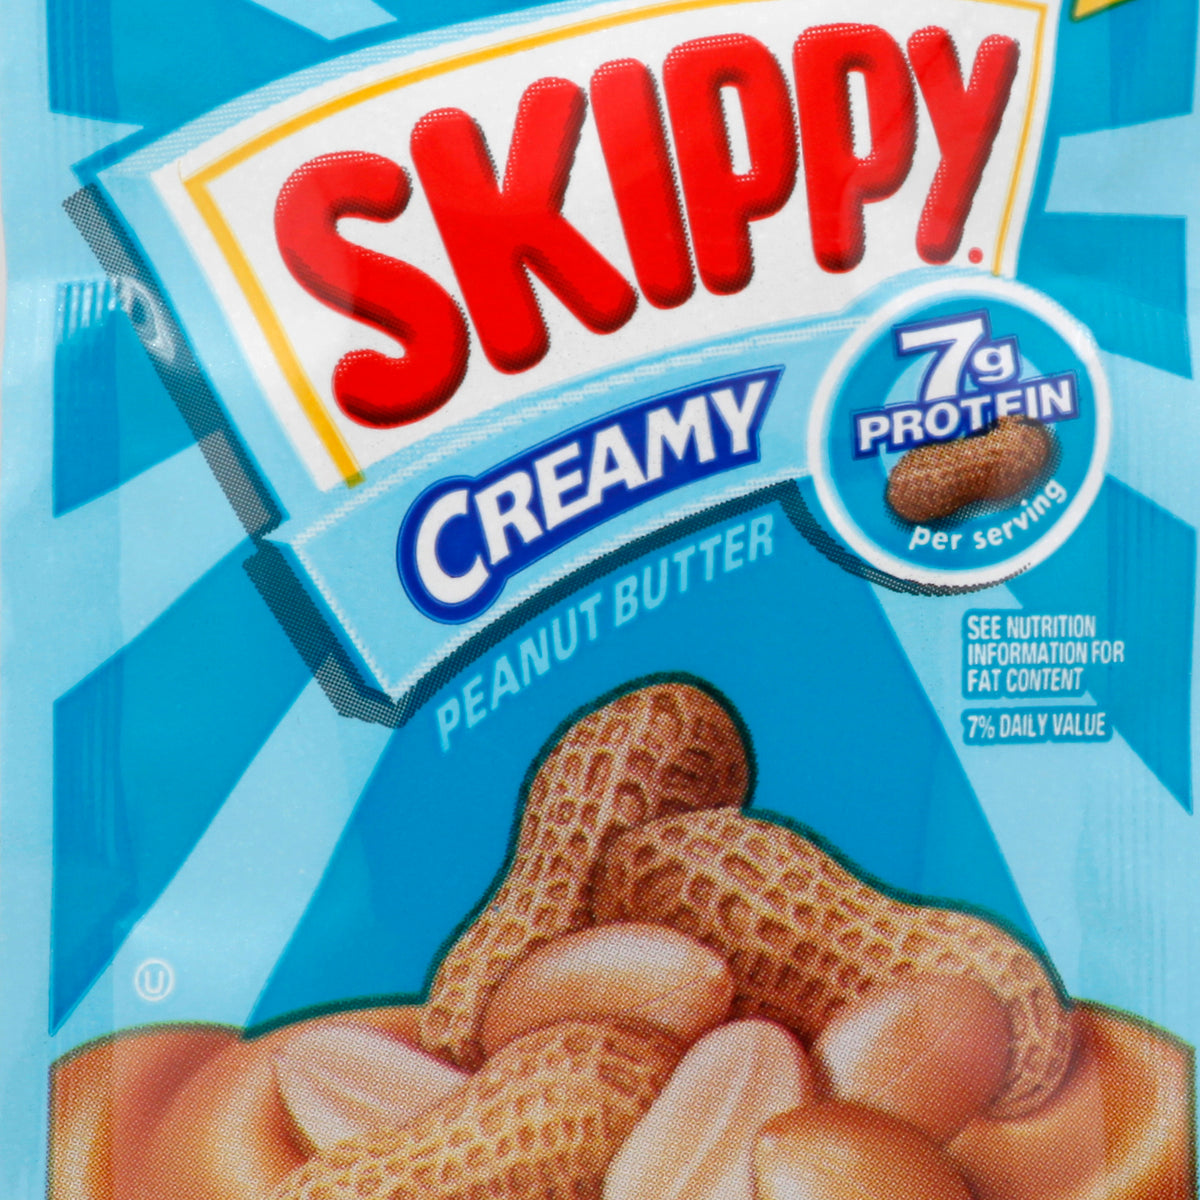 skippy logo